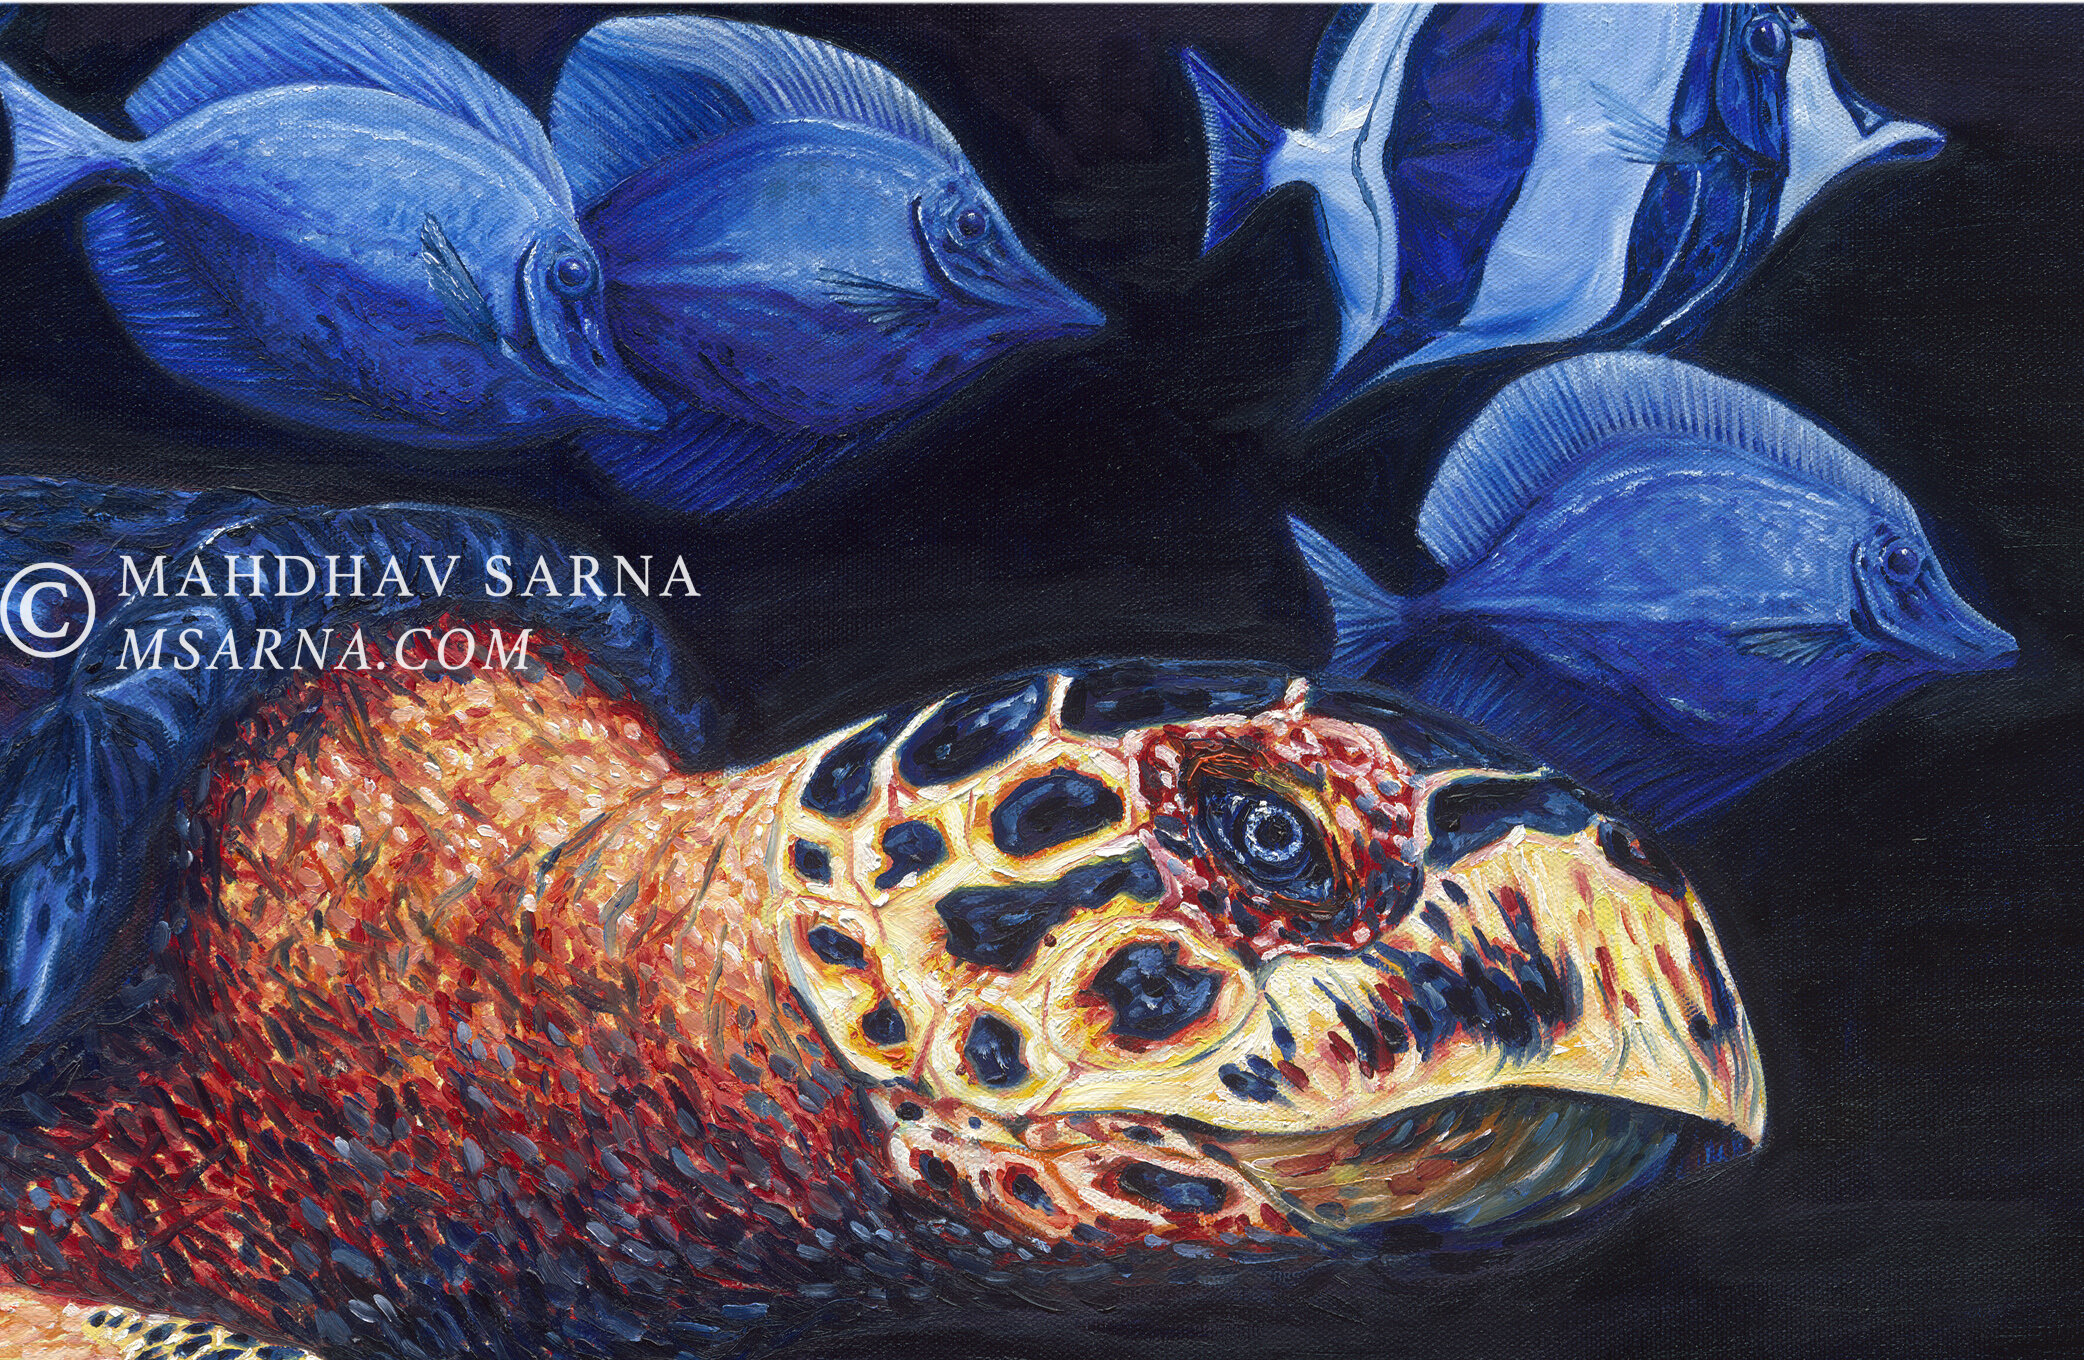 hawksbill turtle oil painting aggp wildlife art mahdhav sarna 02.jpg